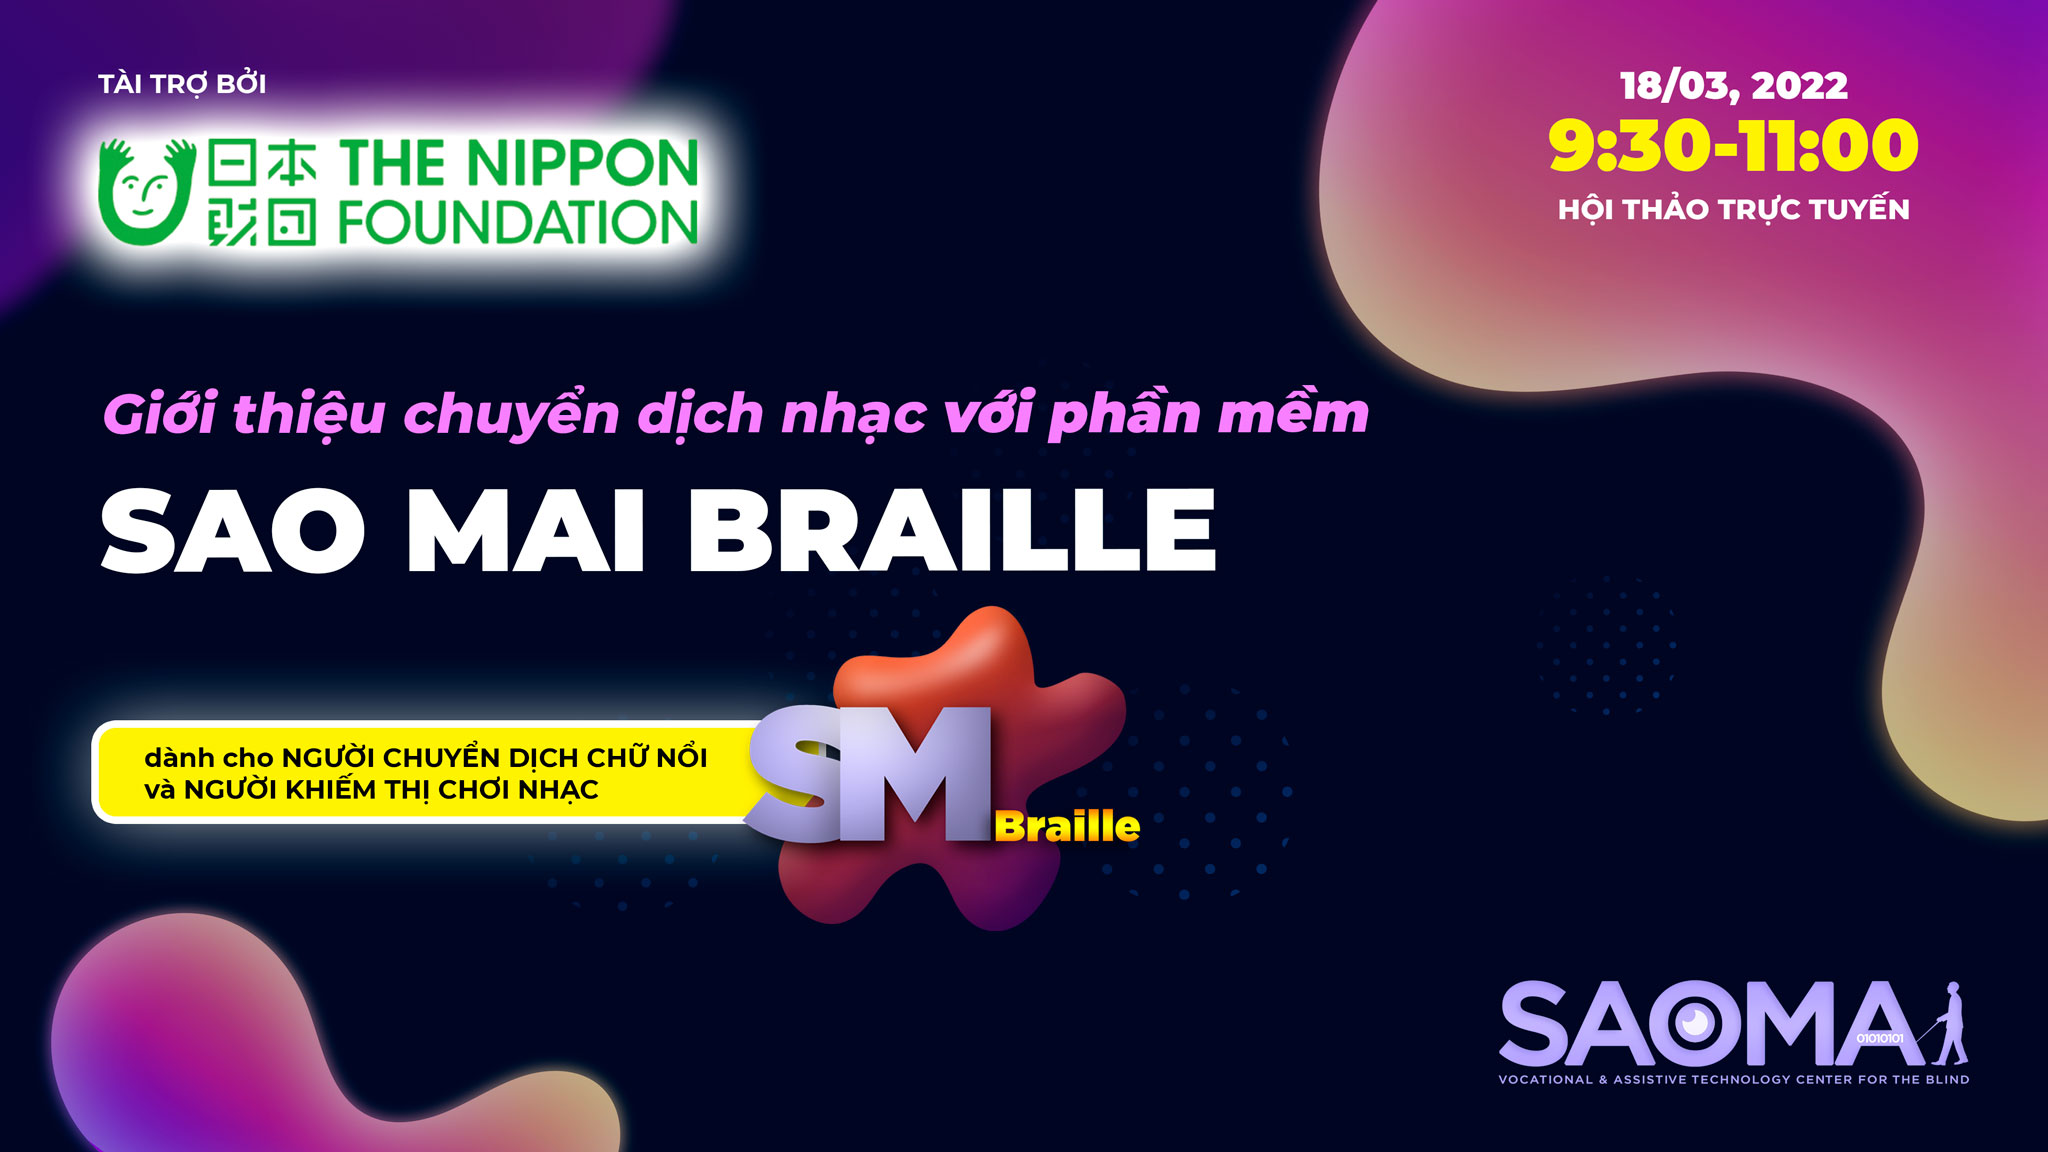 Banner hội thảo: tên chương trình, logo của quỹ Nippon và Sao Mai